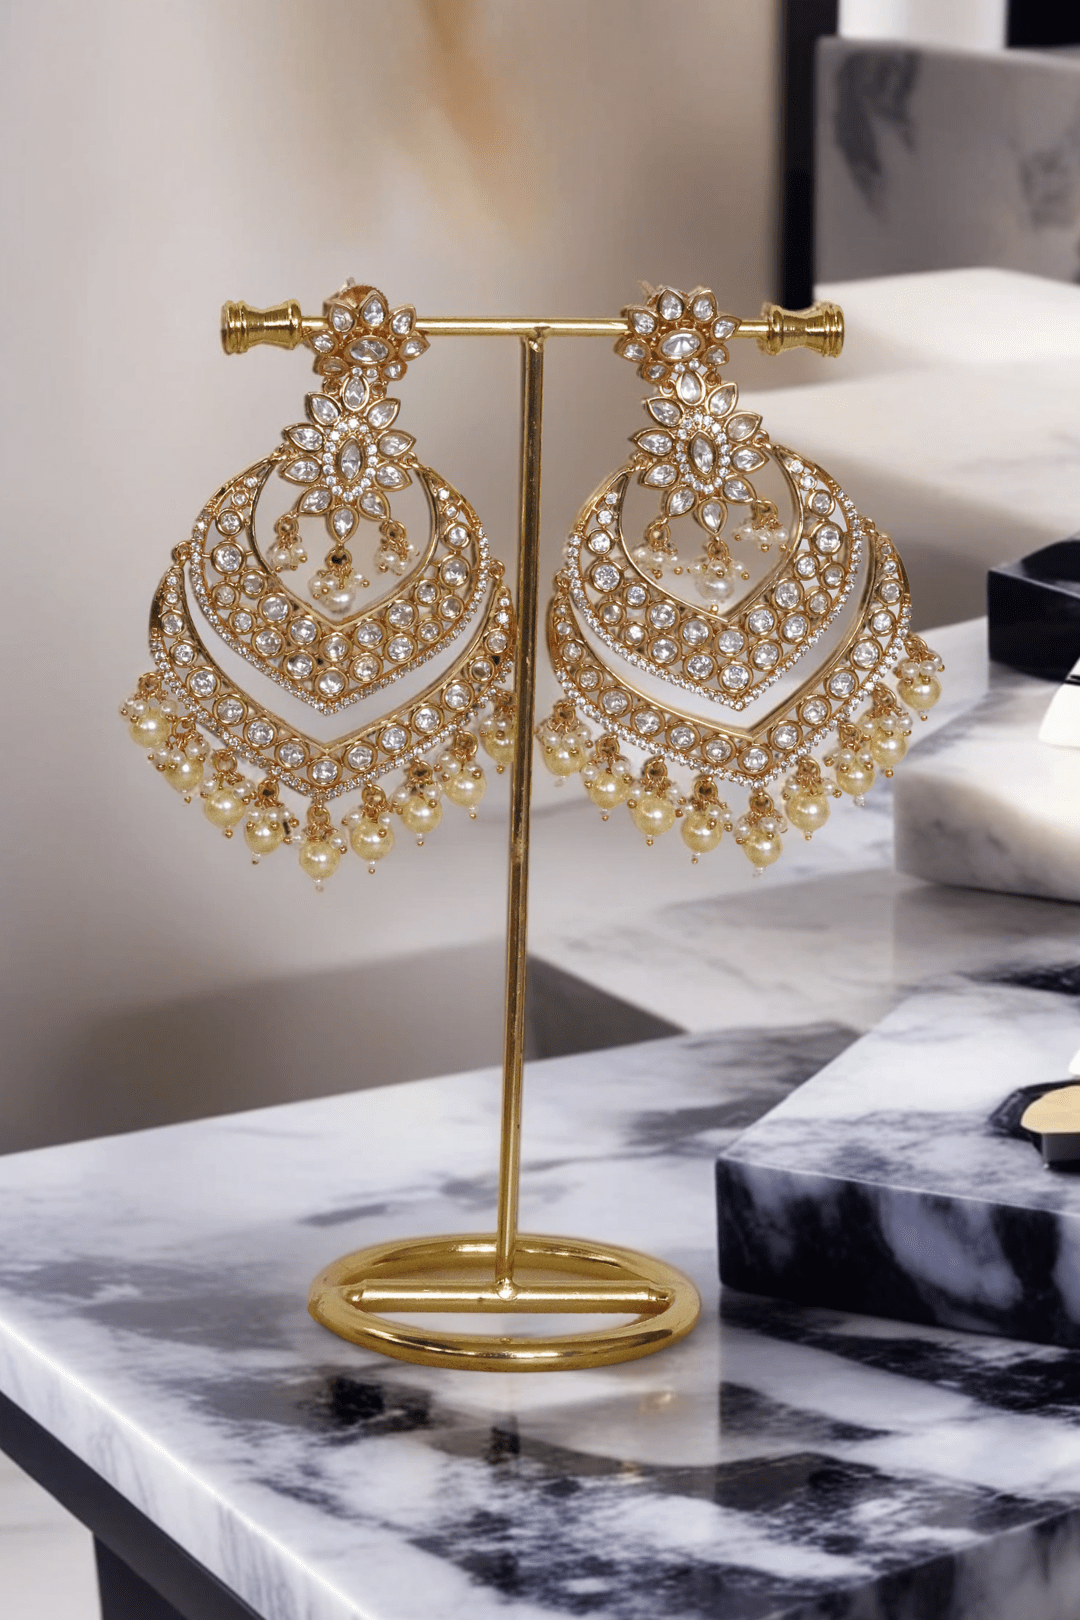 Ashmi - Kundan Statement Earrings Chandelier Earrings from Inaury